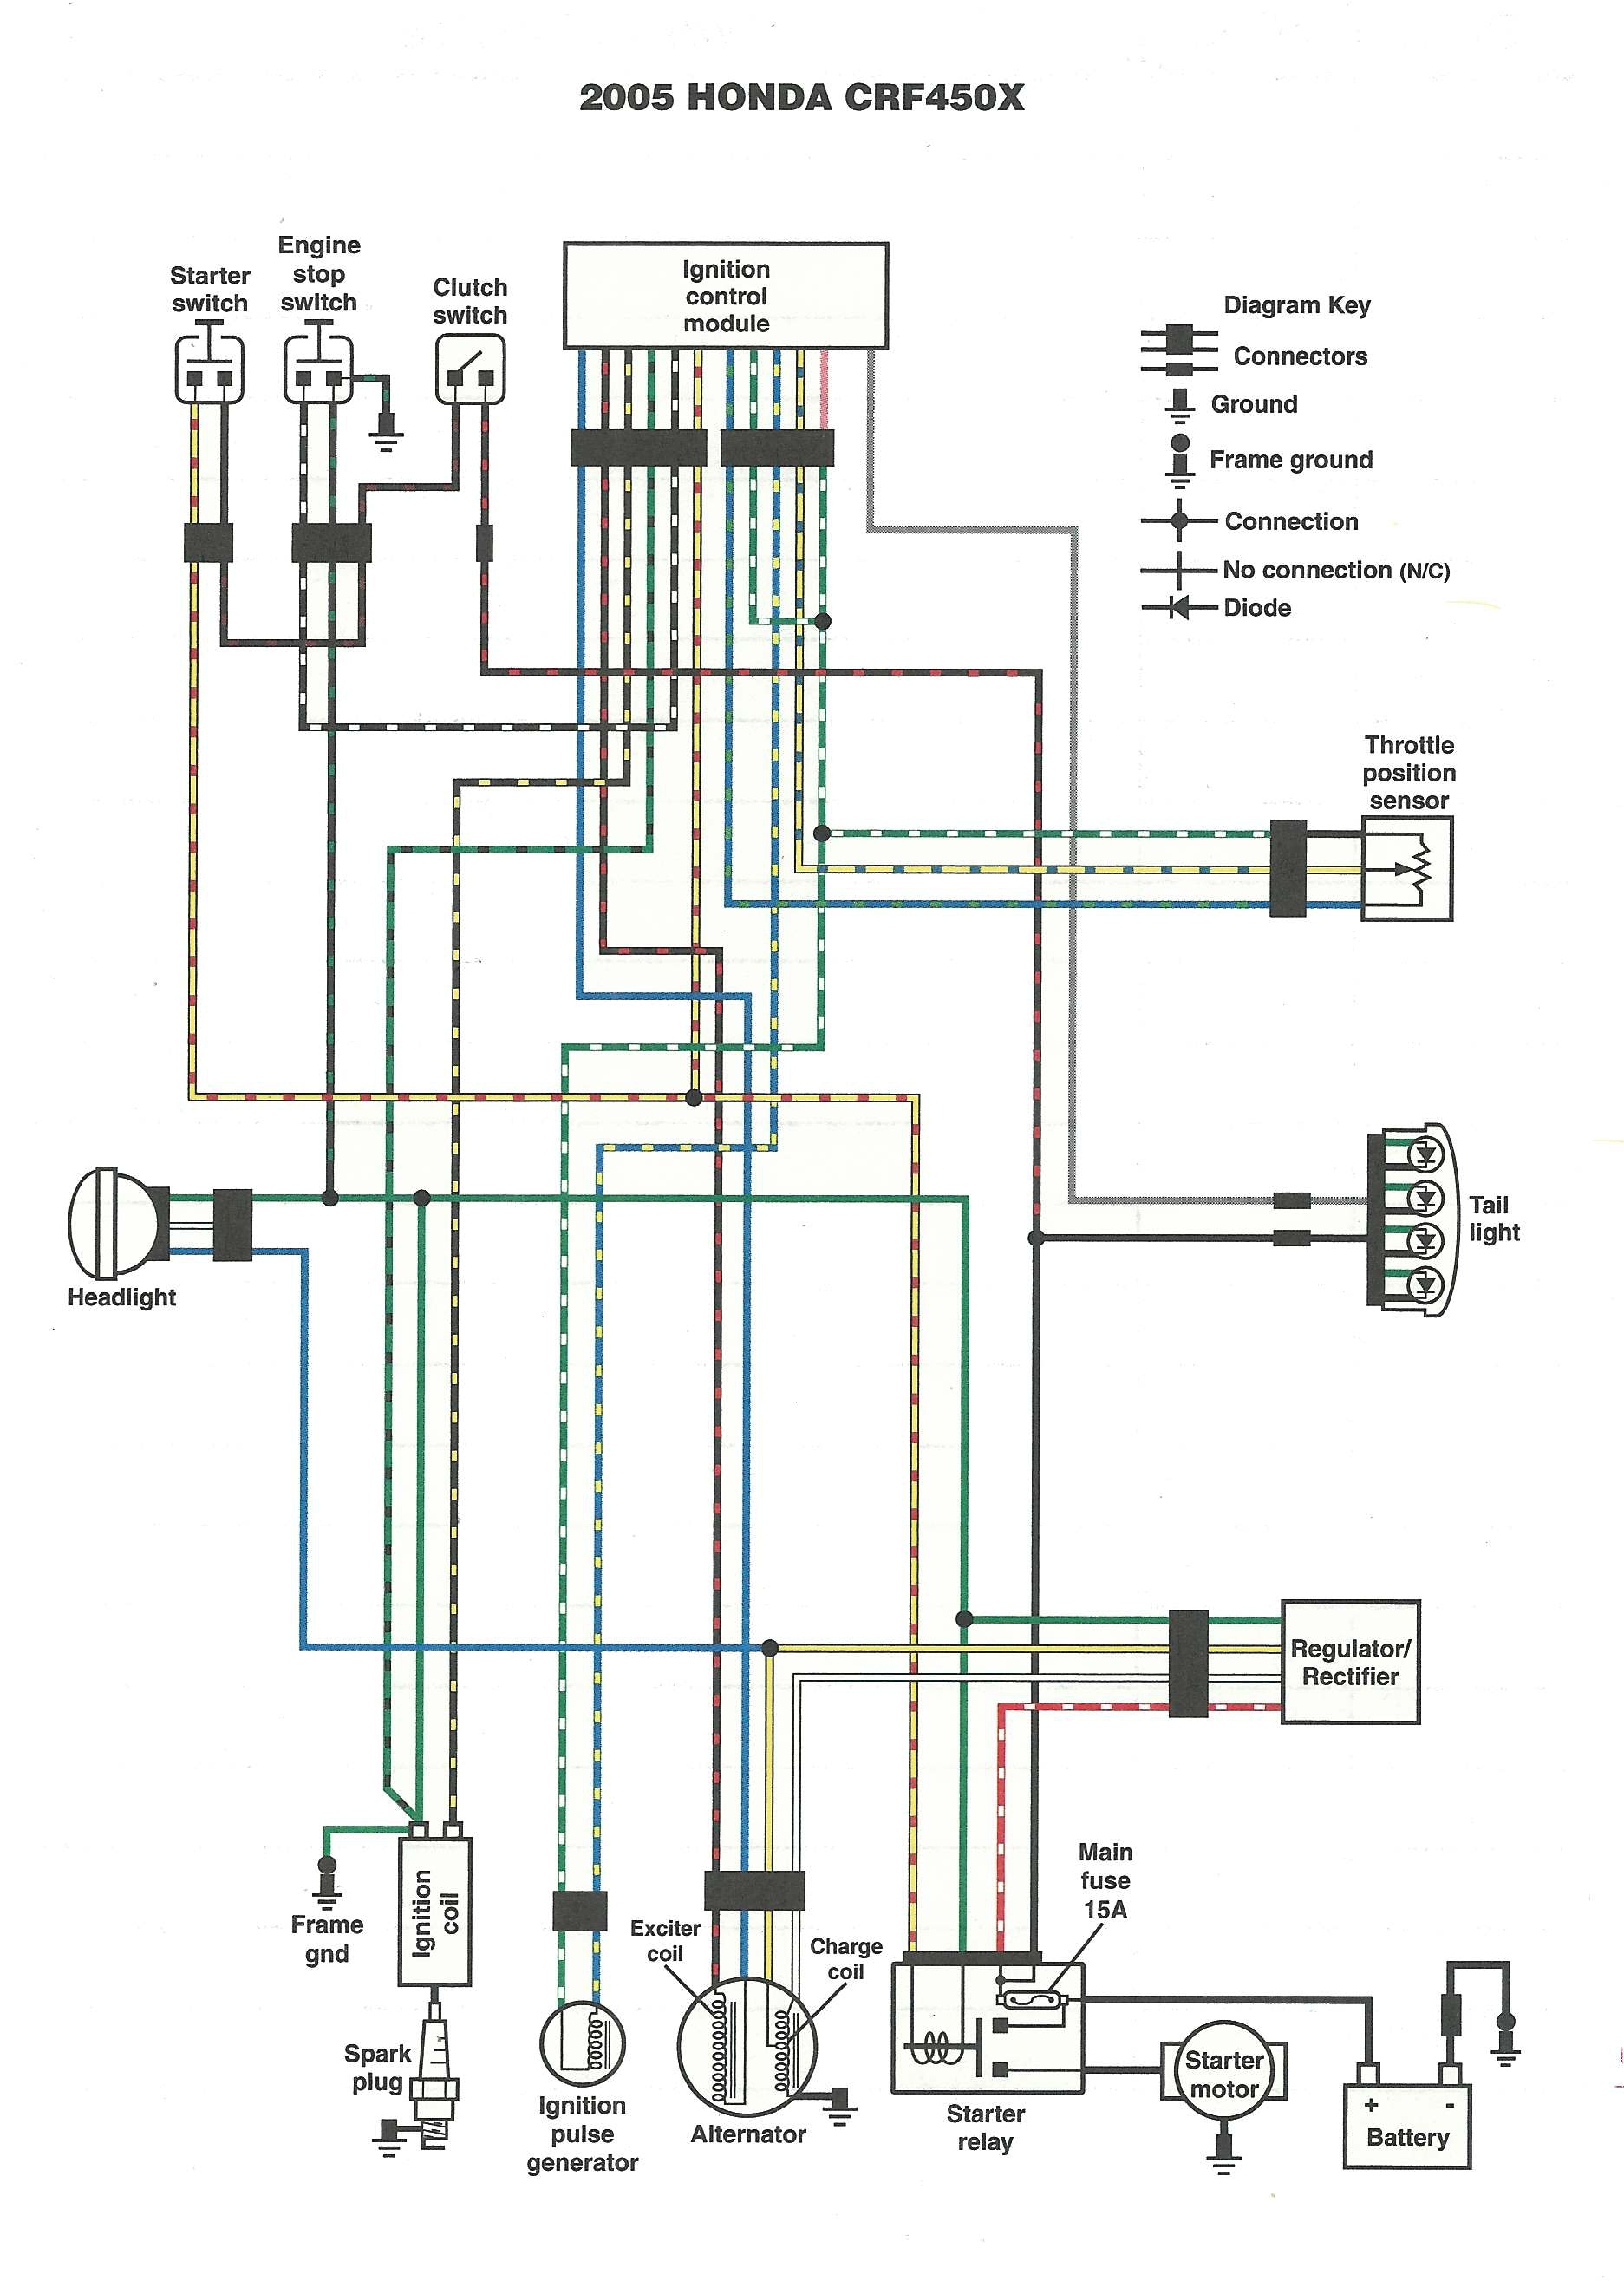 Motorcycle Wiring Schematics Diagram | Wiring Diagram - Simple Motorcycle Wiring Diagram